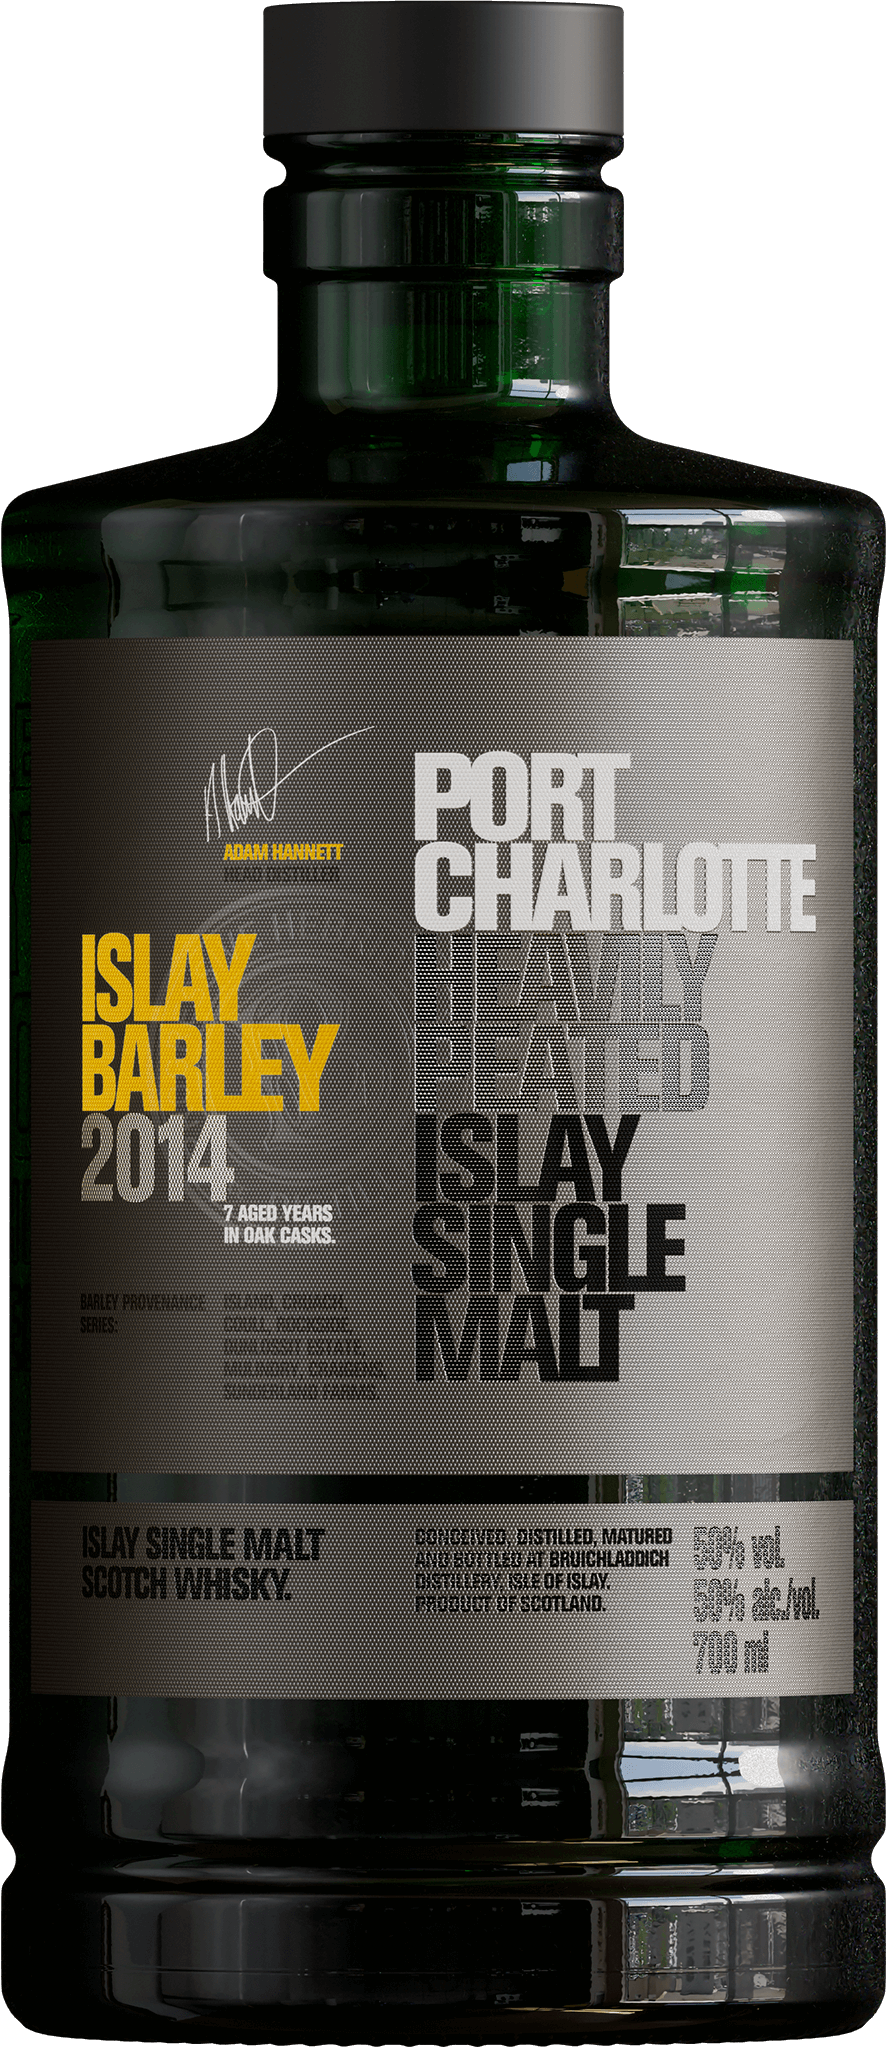 Port Charlotte Islay Barley 2014 Islay Single Malt Scotch Whisky –  Bruichladdich Distillery